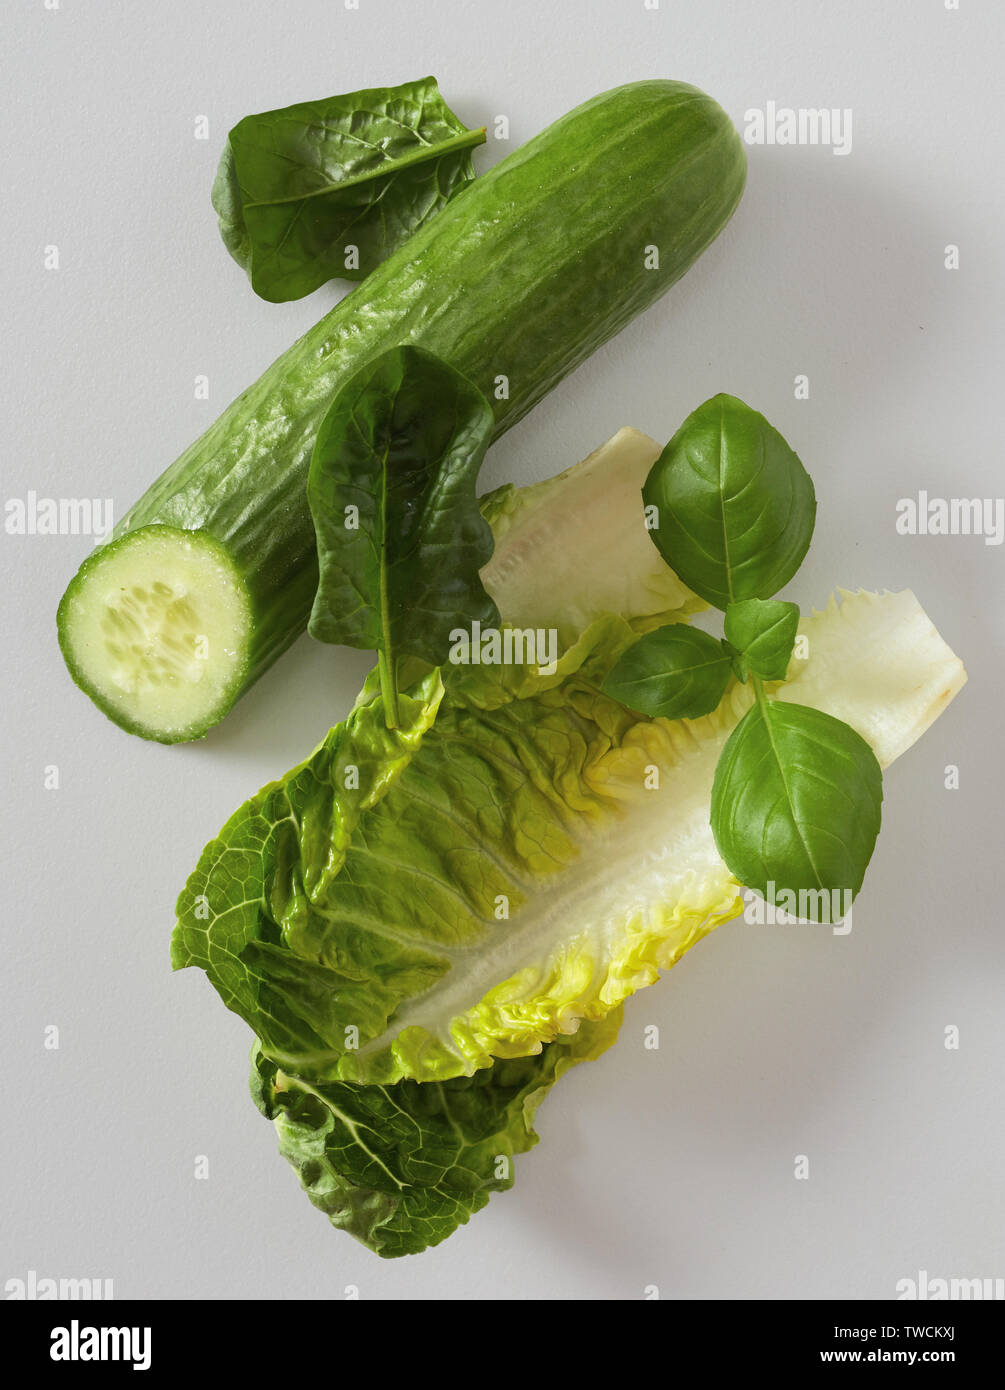 Nara chinois avec le chou pak-choï, branche de basilic frais et concombre pour faire une savoureuse salade verte sur un fond gris clair Banque D'Images